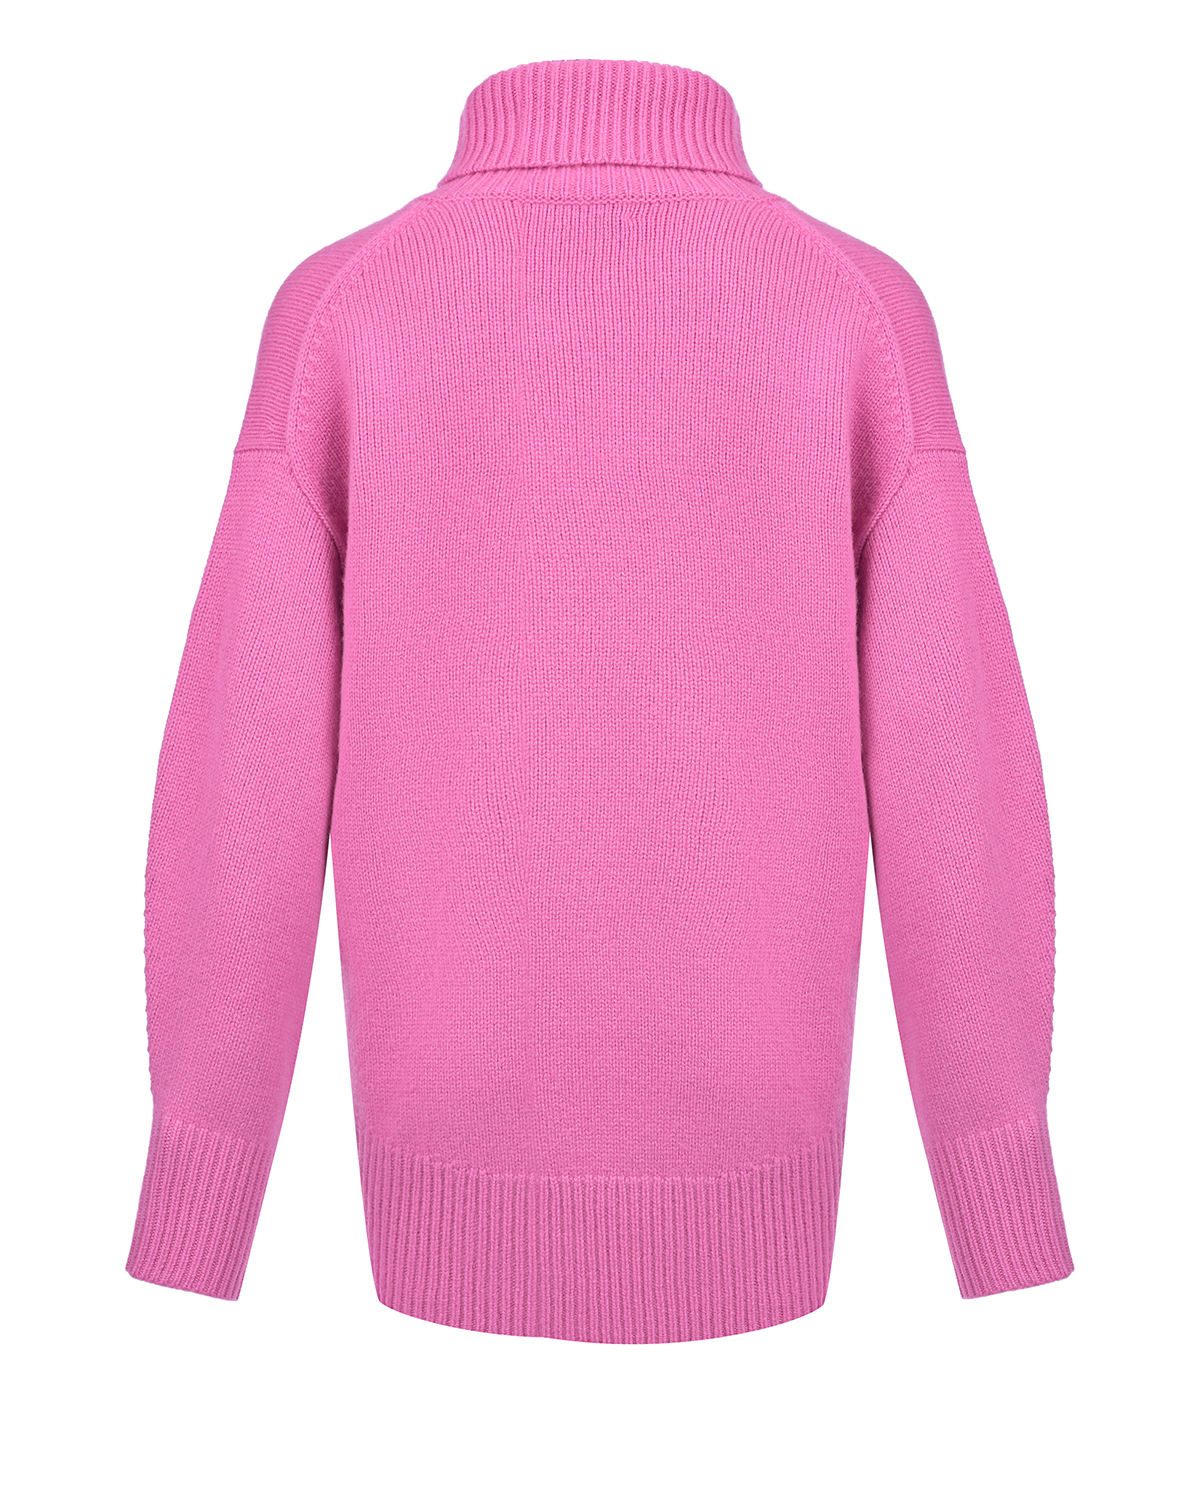 Розовый свитер из кашемира Arch4, размер 38 - фото 6